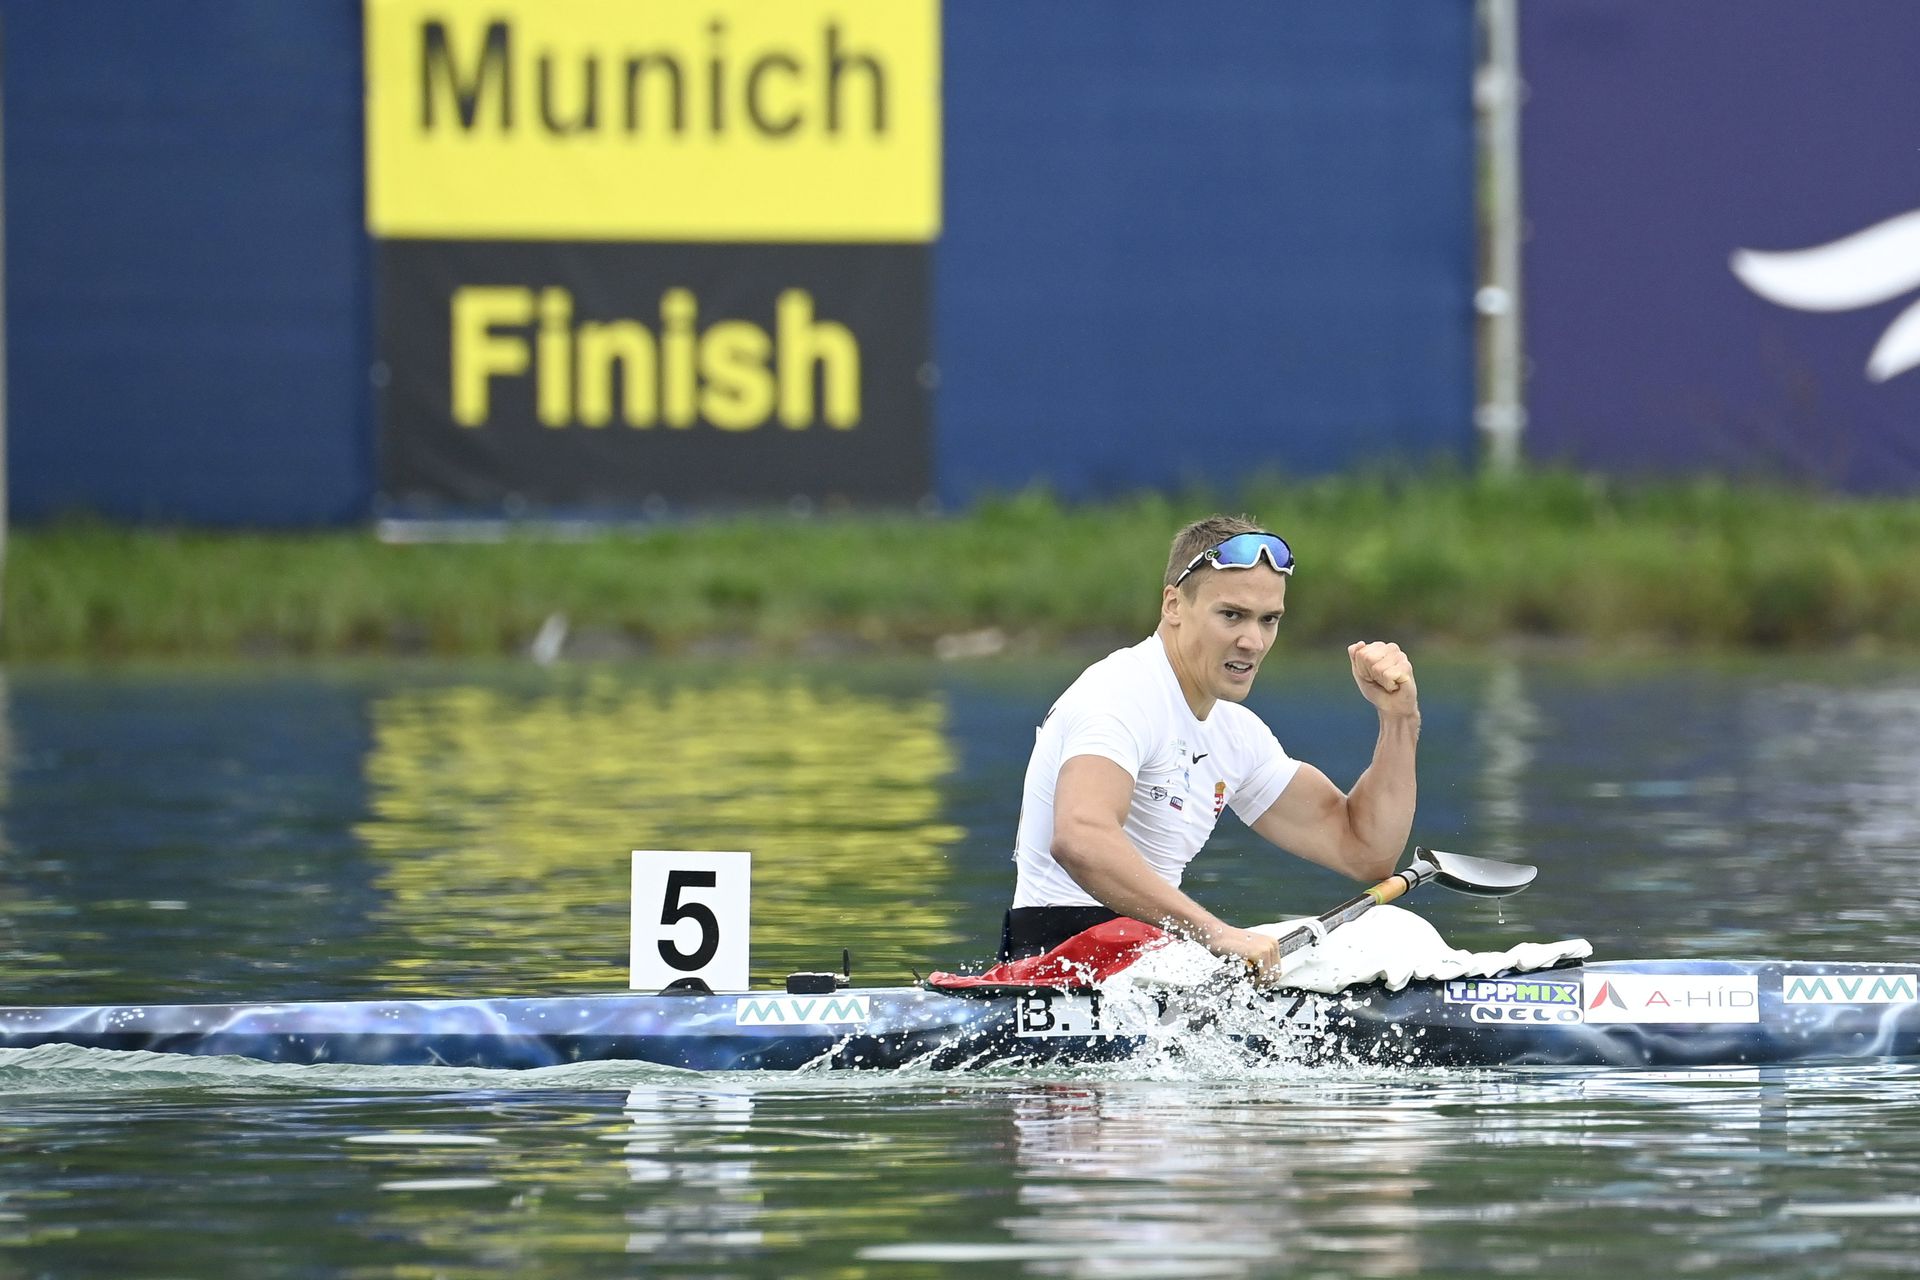 Pedig az idén nem i készült olyan keményen Kopasz, mint az olimpiára, mégsem tudta legyőzni őt senki Müncenben /Fotó: MTI Koszticsák Szilárd